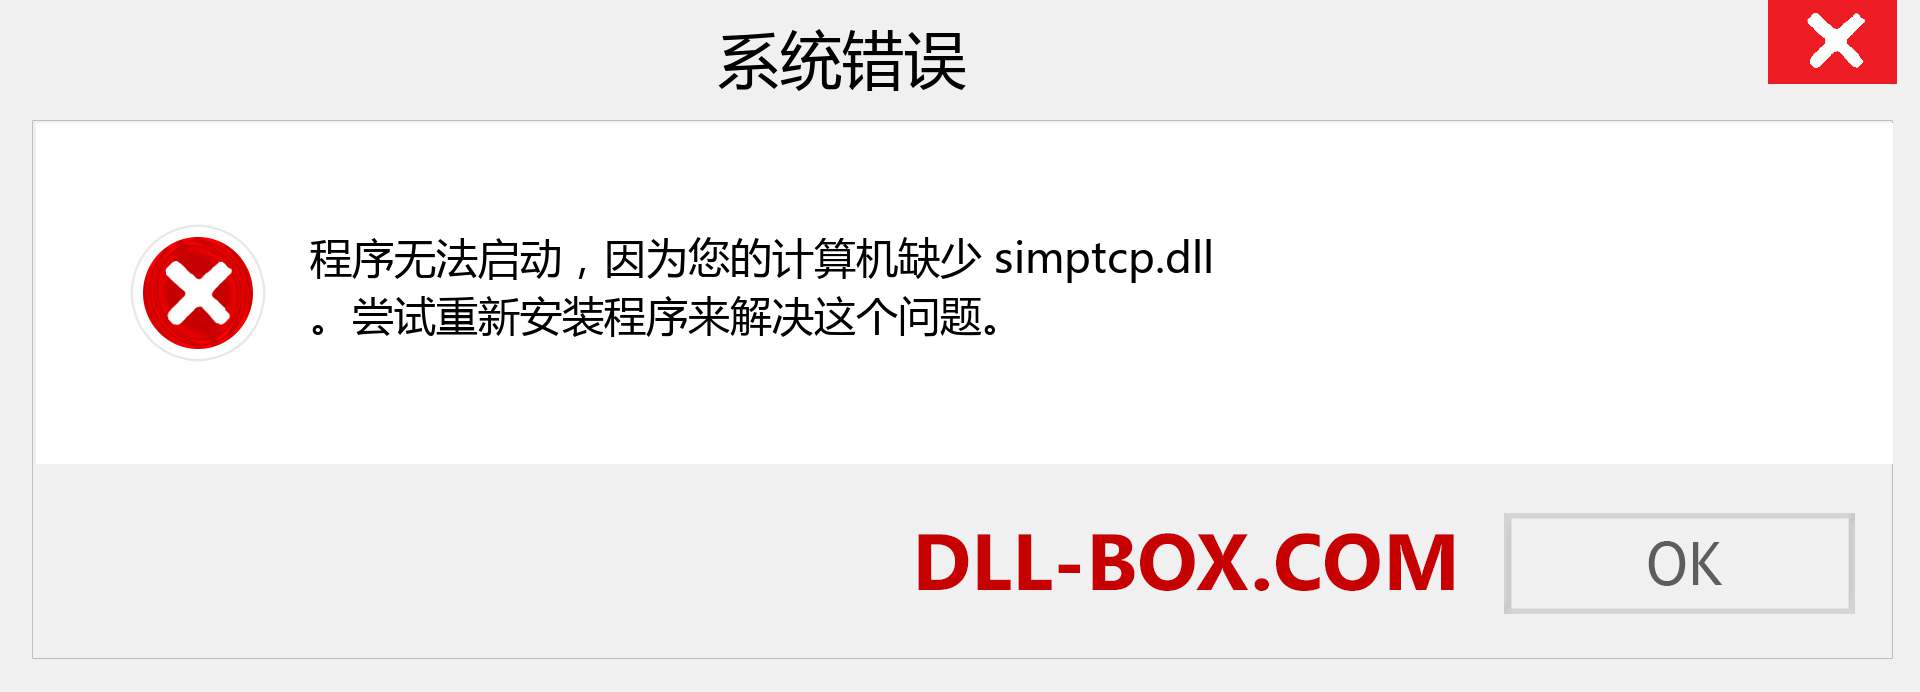 simptcp.dll 文件丢失？。 适用于 Windows 7、8、10 的下载 - 修复 Windows、照片、图像上的 simptcp dll 丢失错误